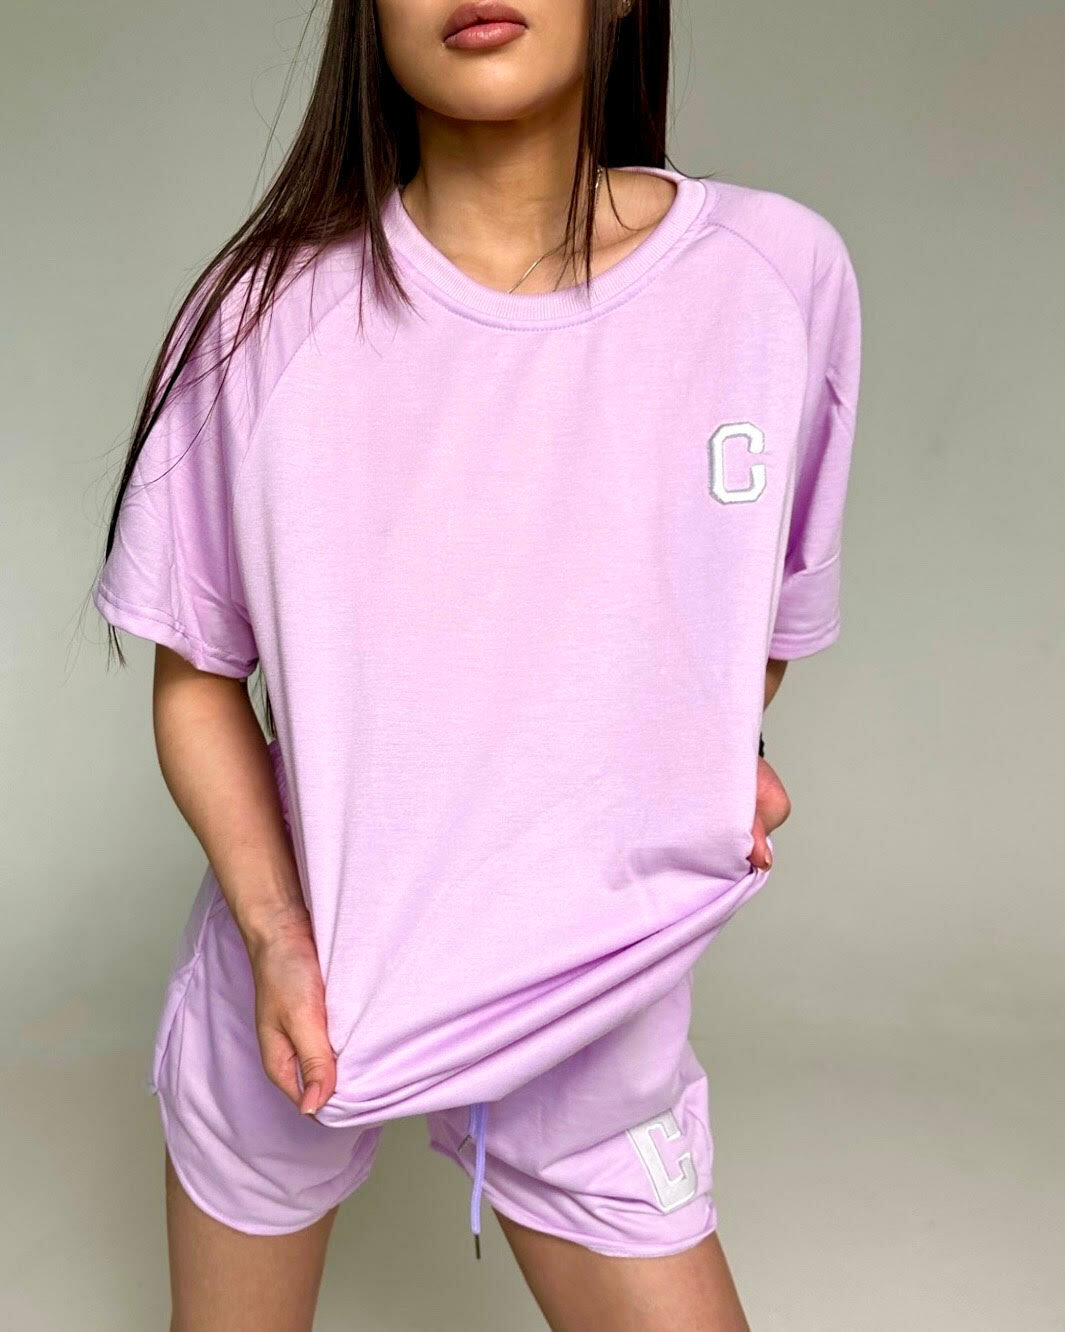 Пижама NO NAME, размер единый, фиолетовый - фотография № 1